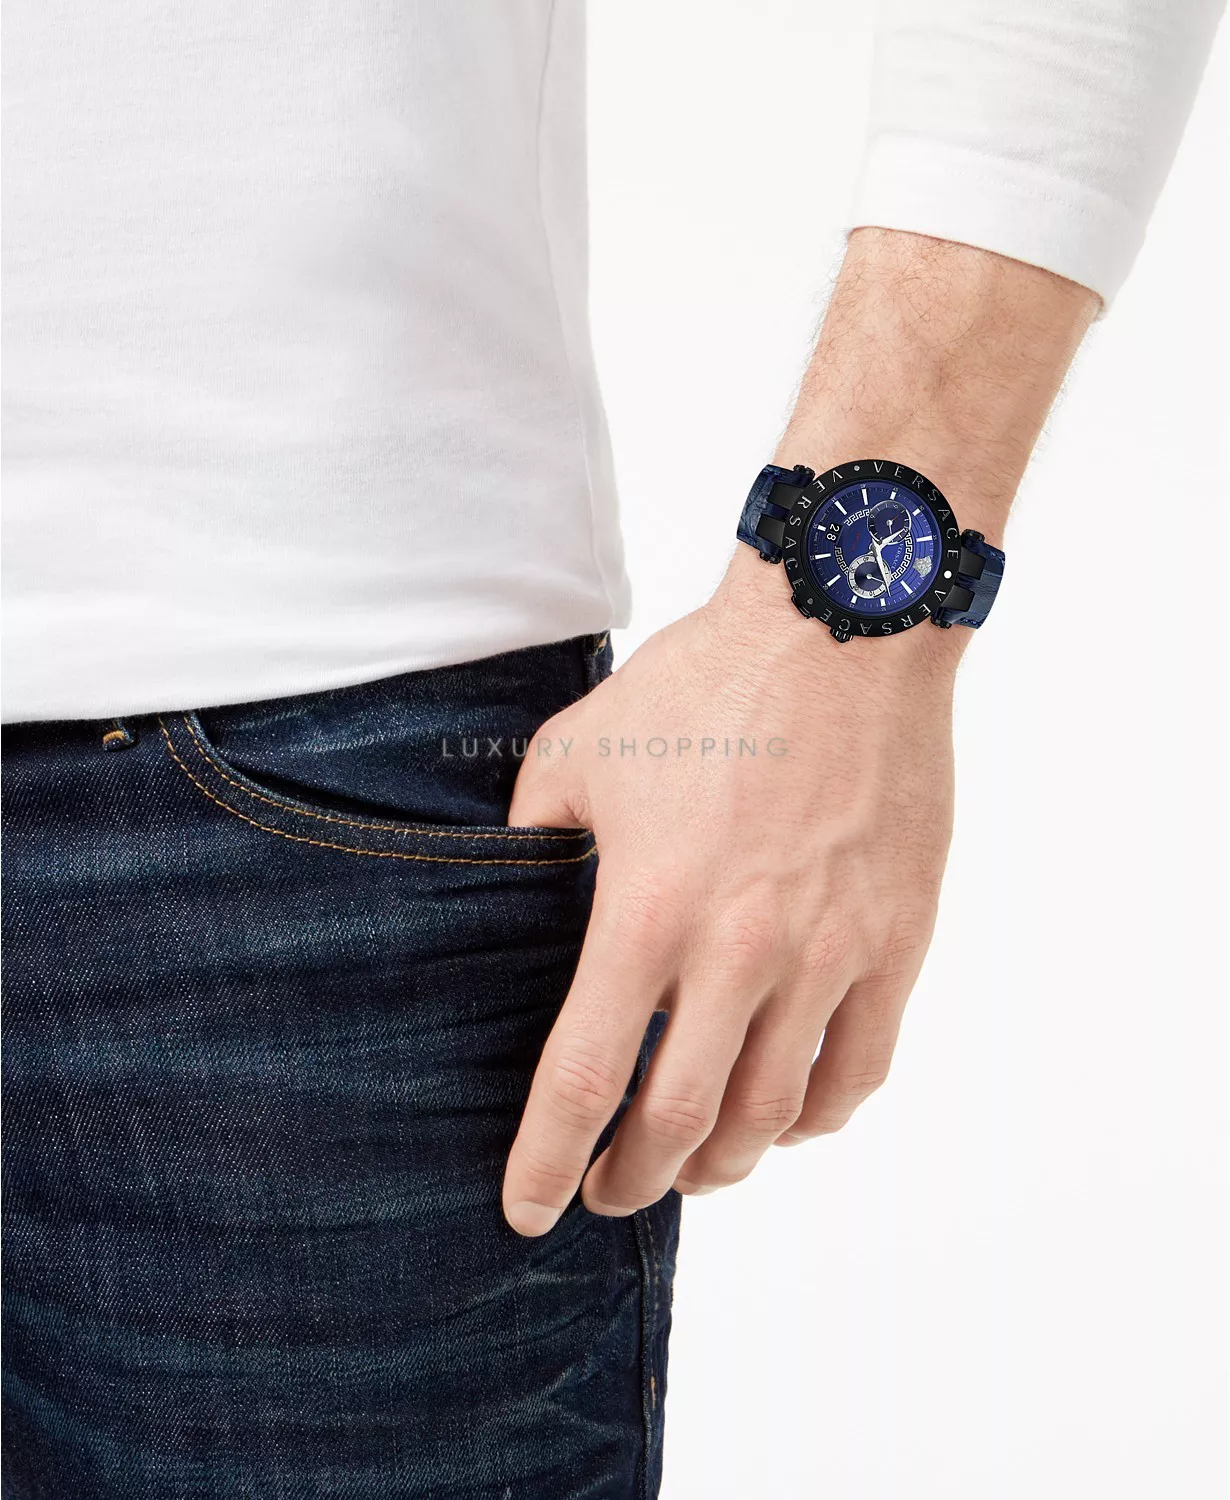 Versace V-Race Blue Swiss Watch 46mm